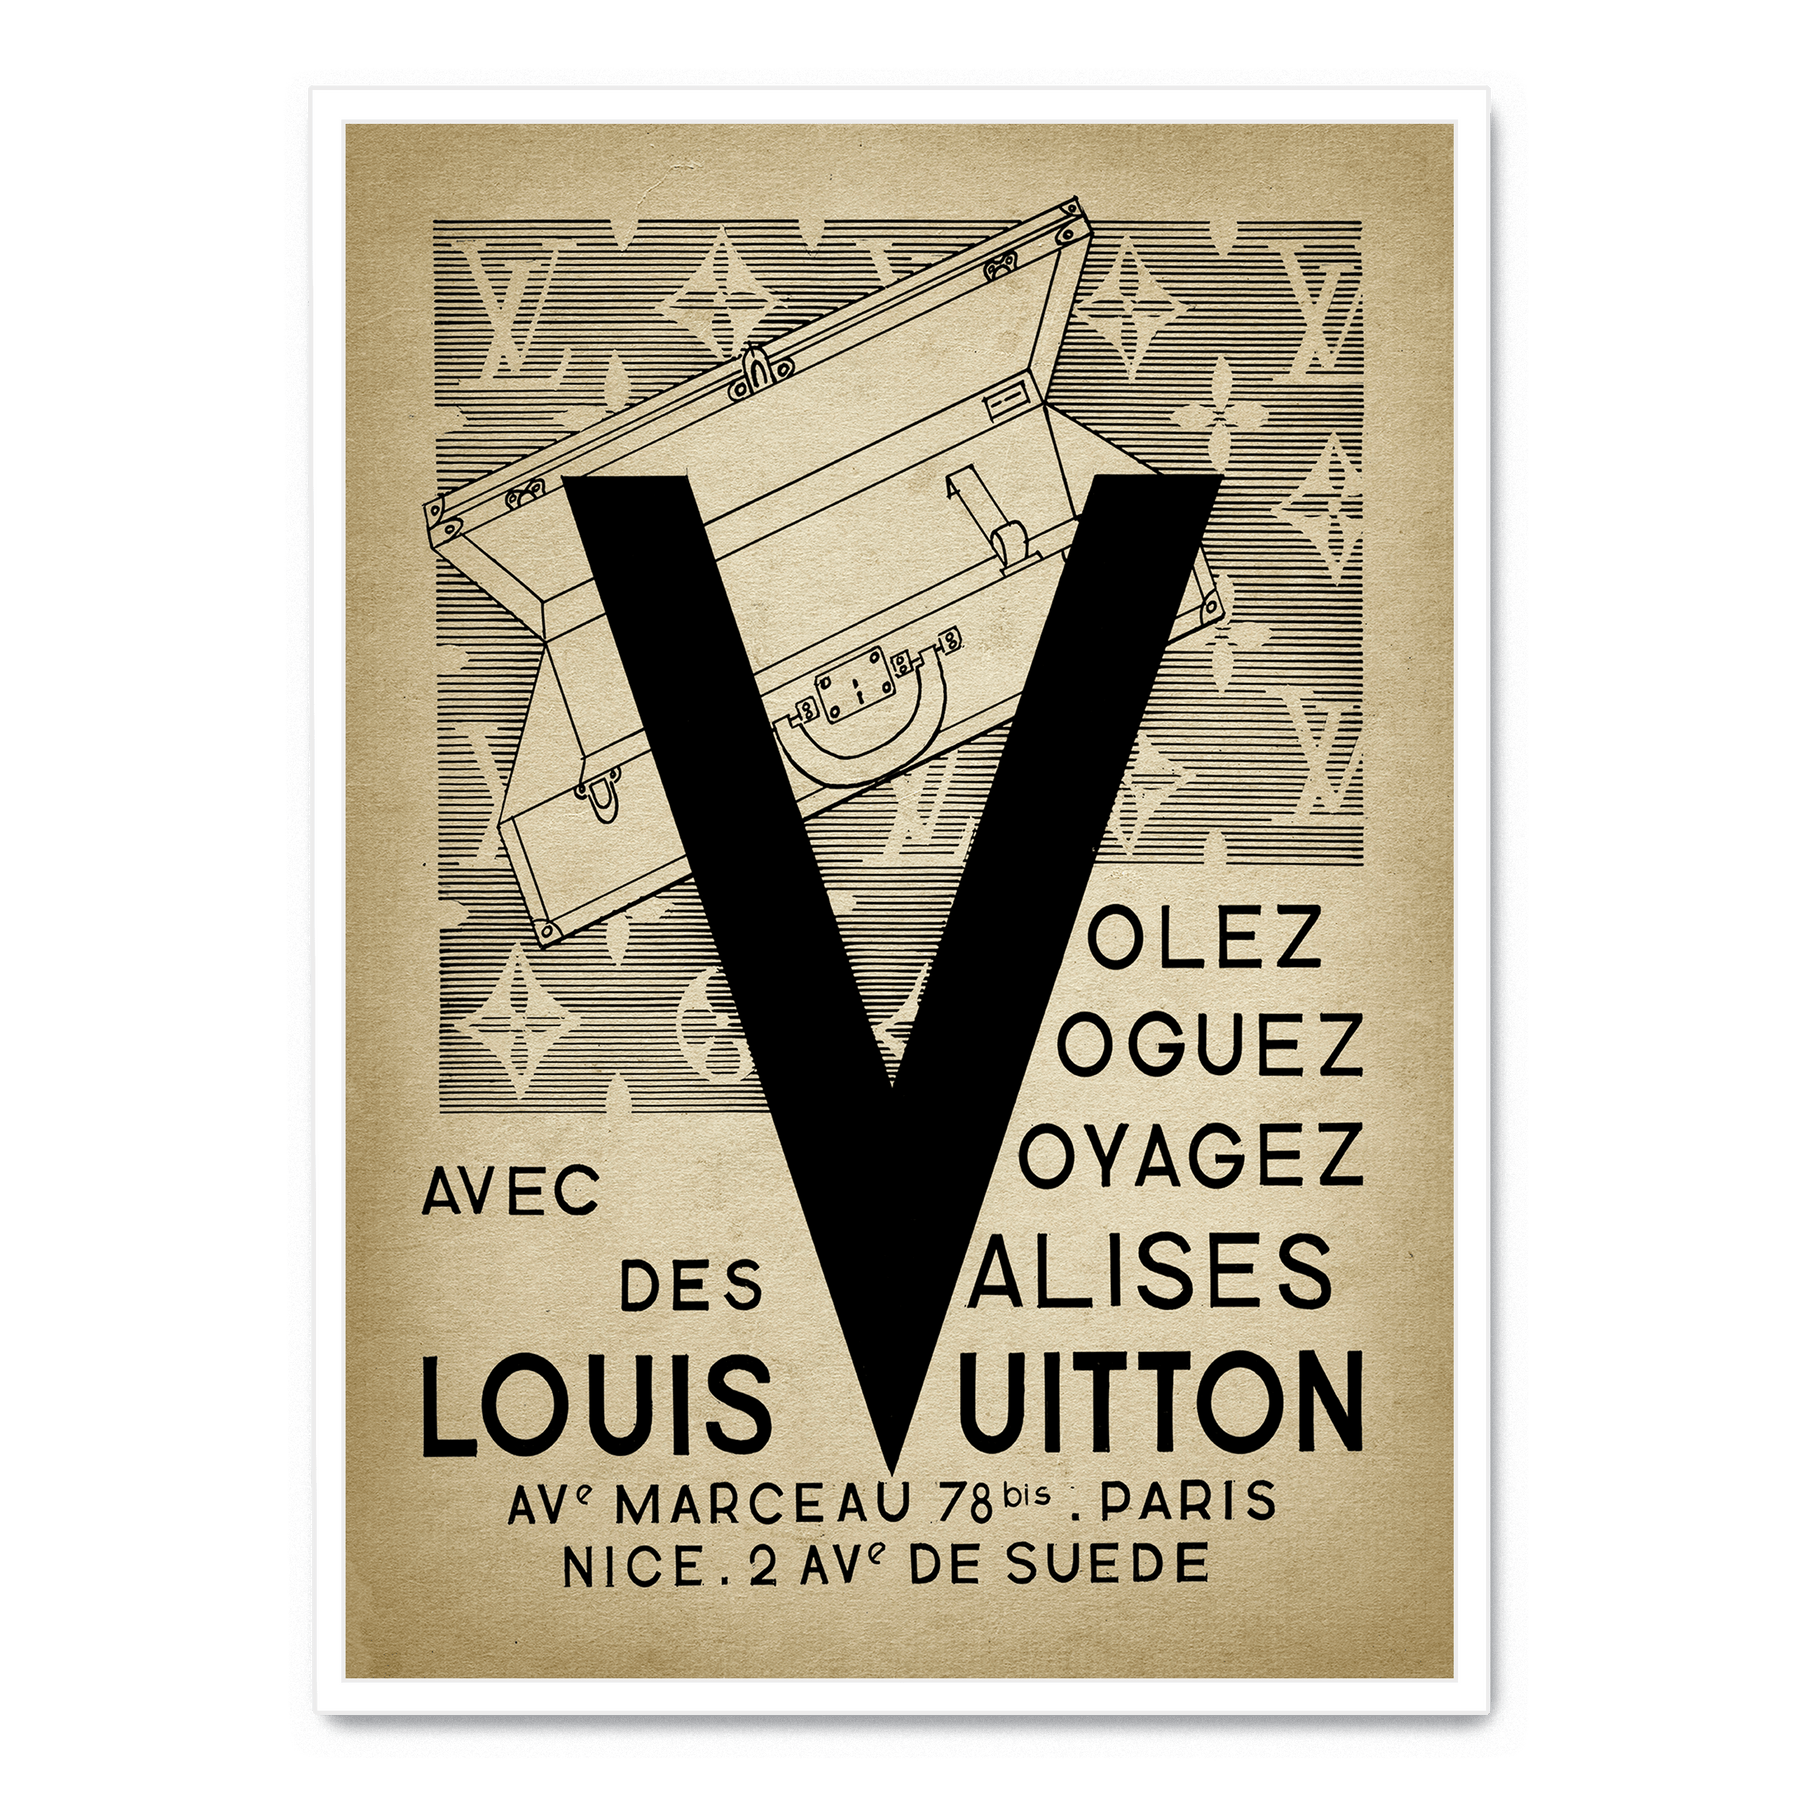 Louis Vuitton poster affisch inredning tavla vä  Köp på Tradera  604062125